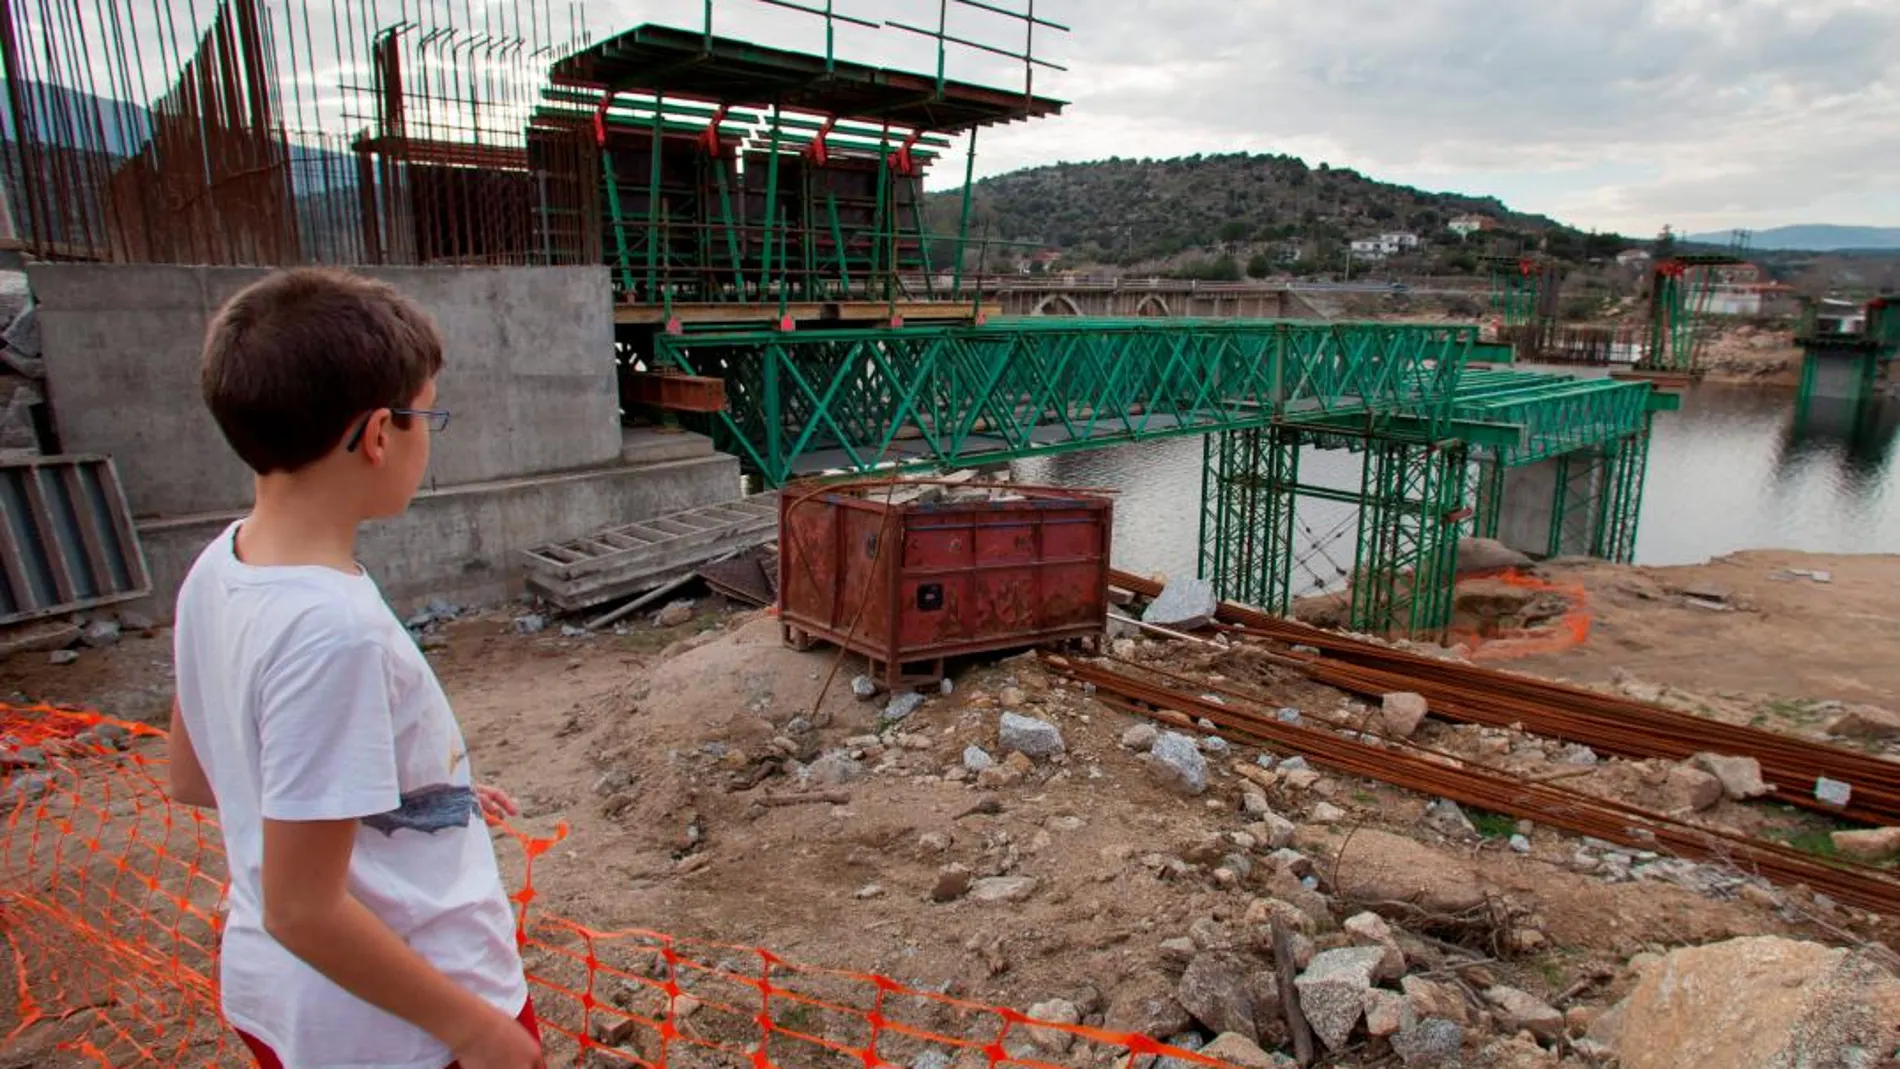 Obras en El Barraco (Ávila) que, al carecer de normativa urbanística, ha desarrollado planes parciales para trabajos de construcción